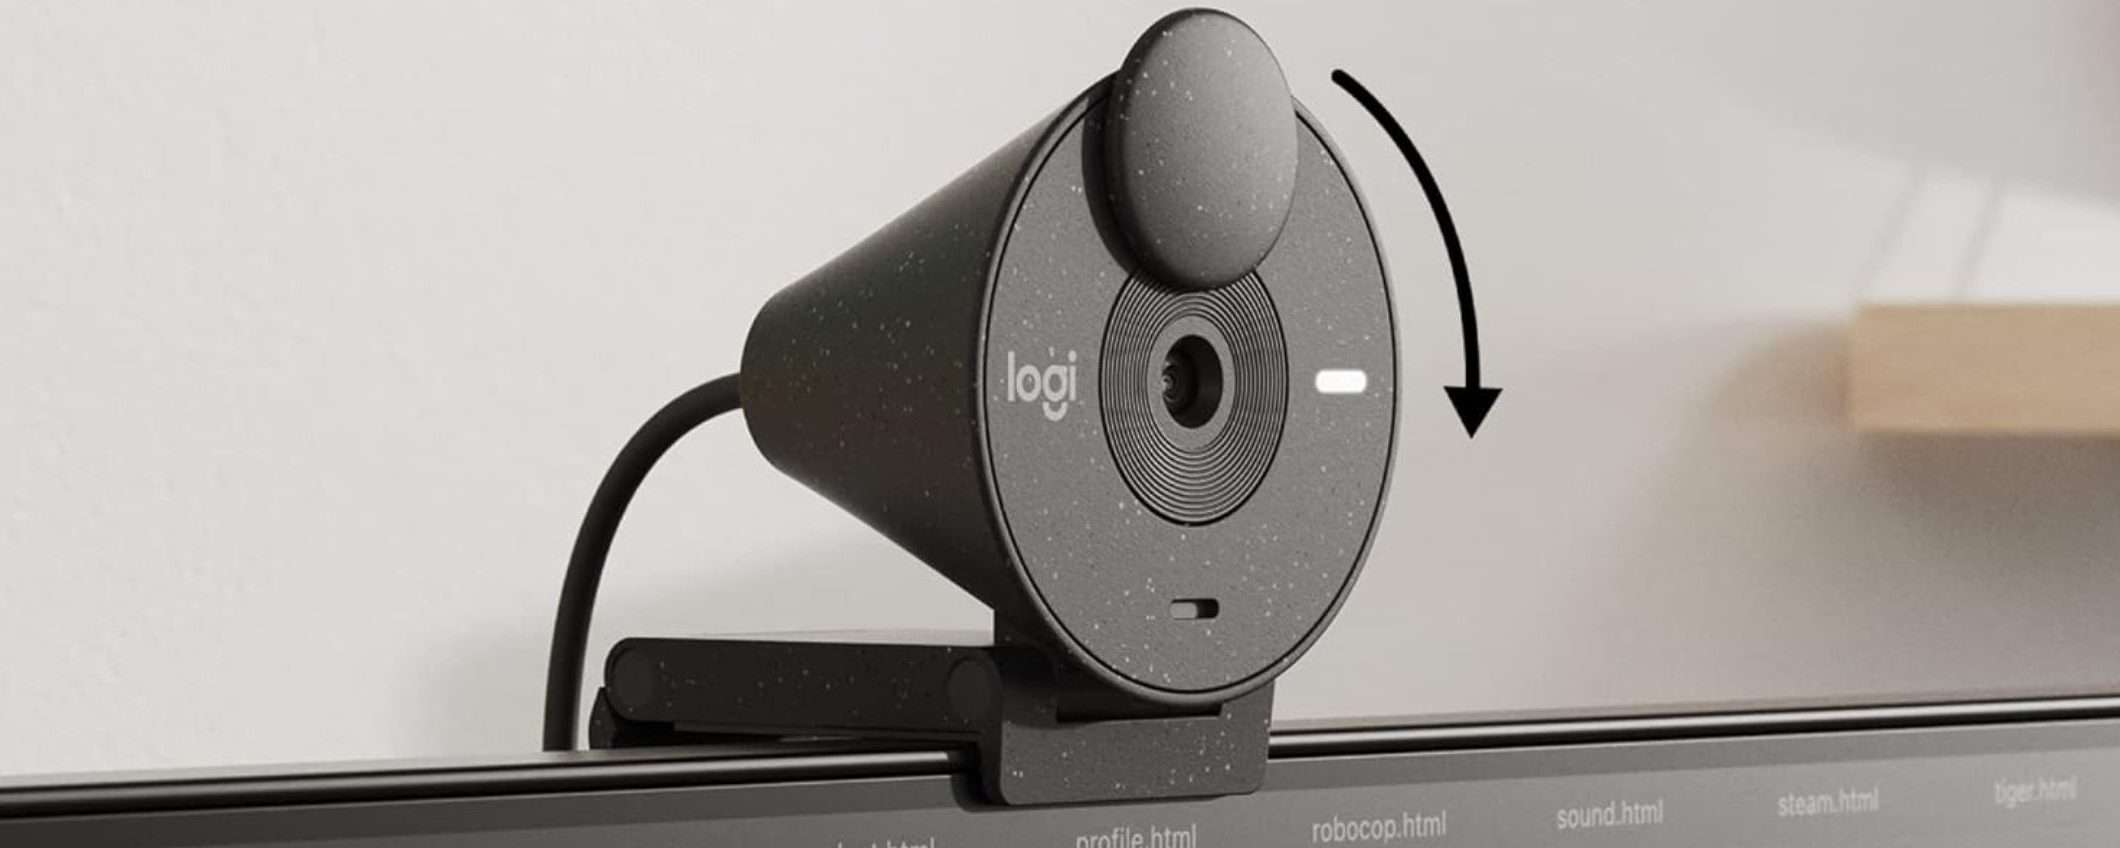 Webcam Logitech Full HD con otturatore privacy in SCONTO su Amazon